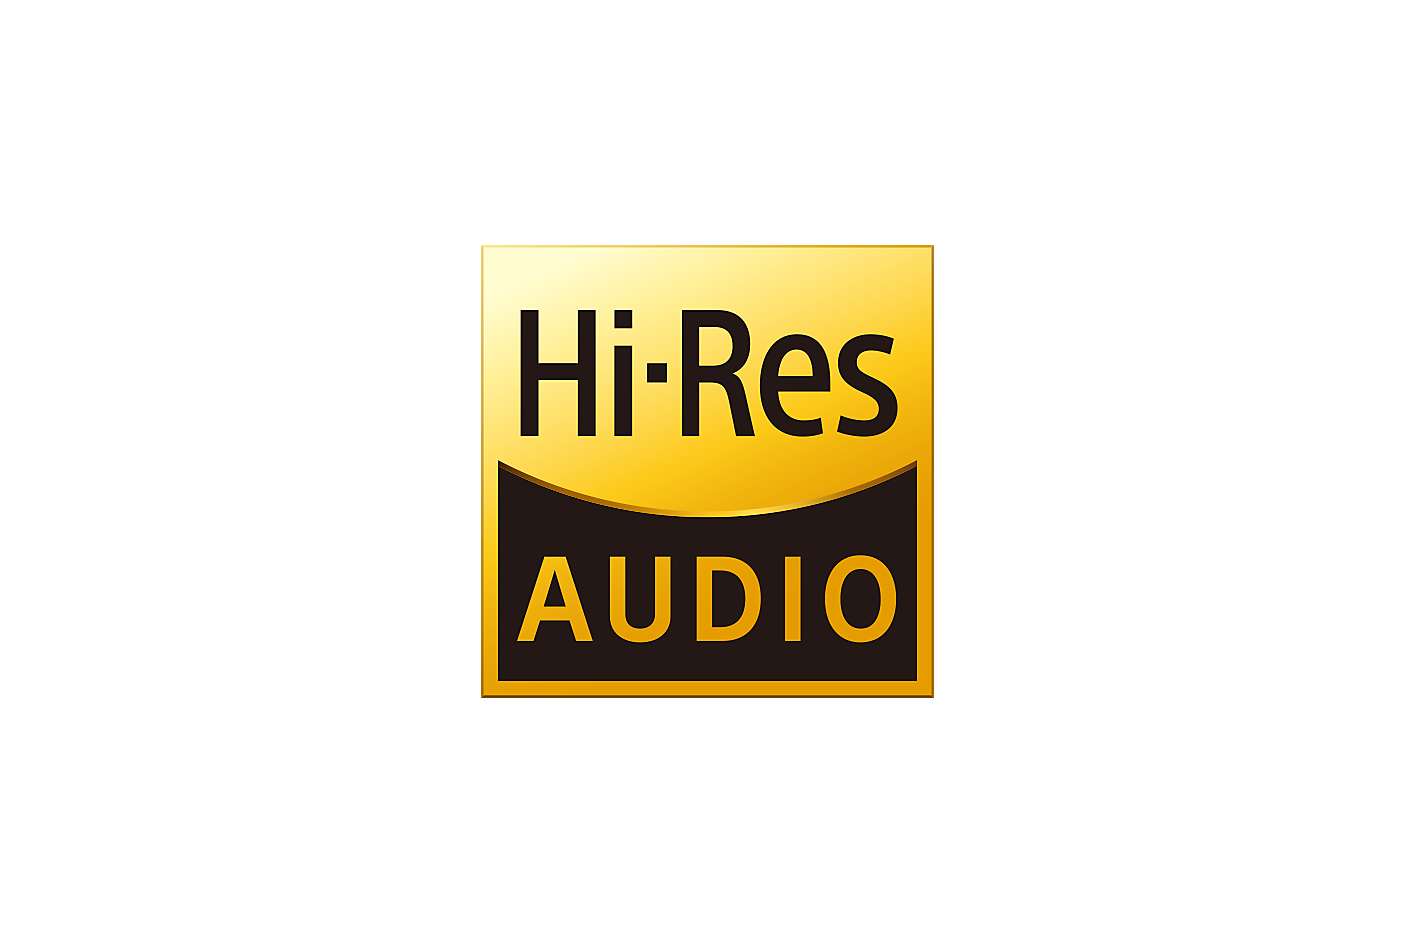 Une image du logo Hi-Res Audio.